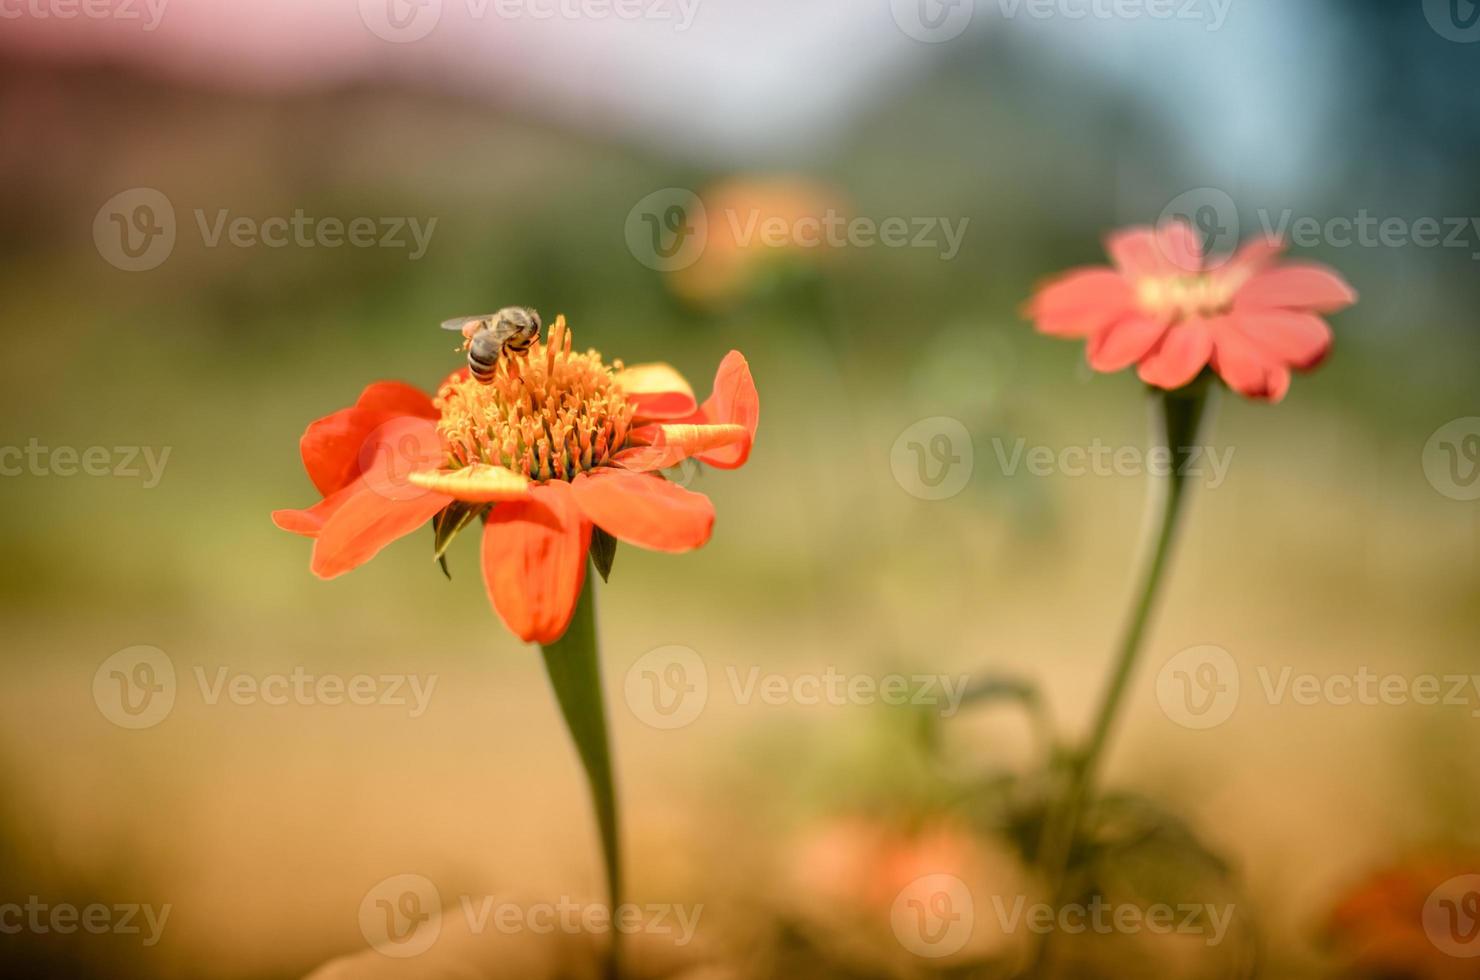 humblee-bee sentada sobre una flor de dalia roja foto